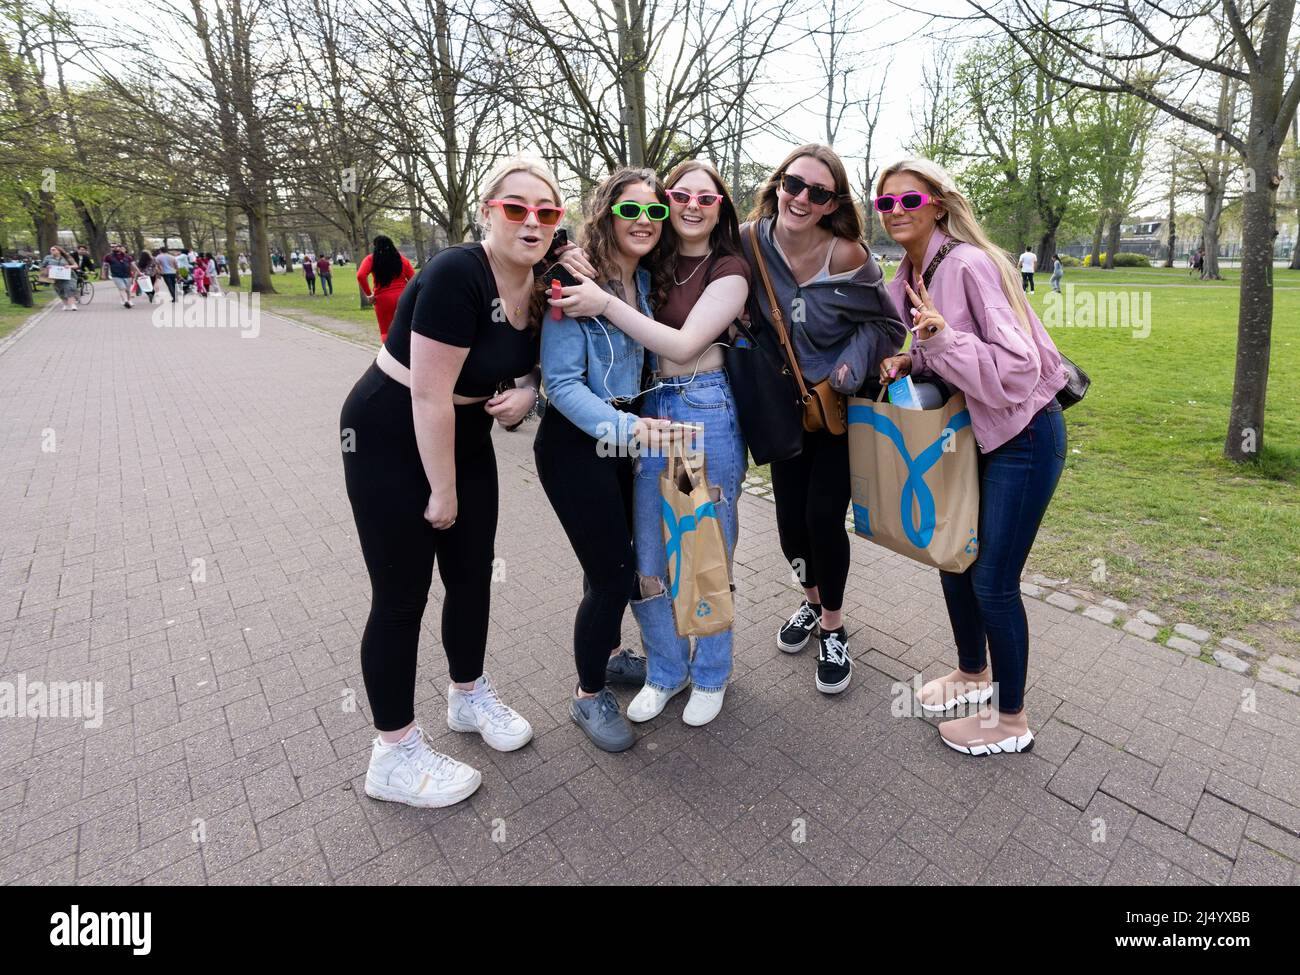 UK Lifestyle; fünf junge Frauen in Sonnenbrillen, Großbritannien - glückliche Teenager-Mädchen, die in Cambridge, Großbritannien, einkaufen und Spaß haben Stockfoto